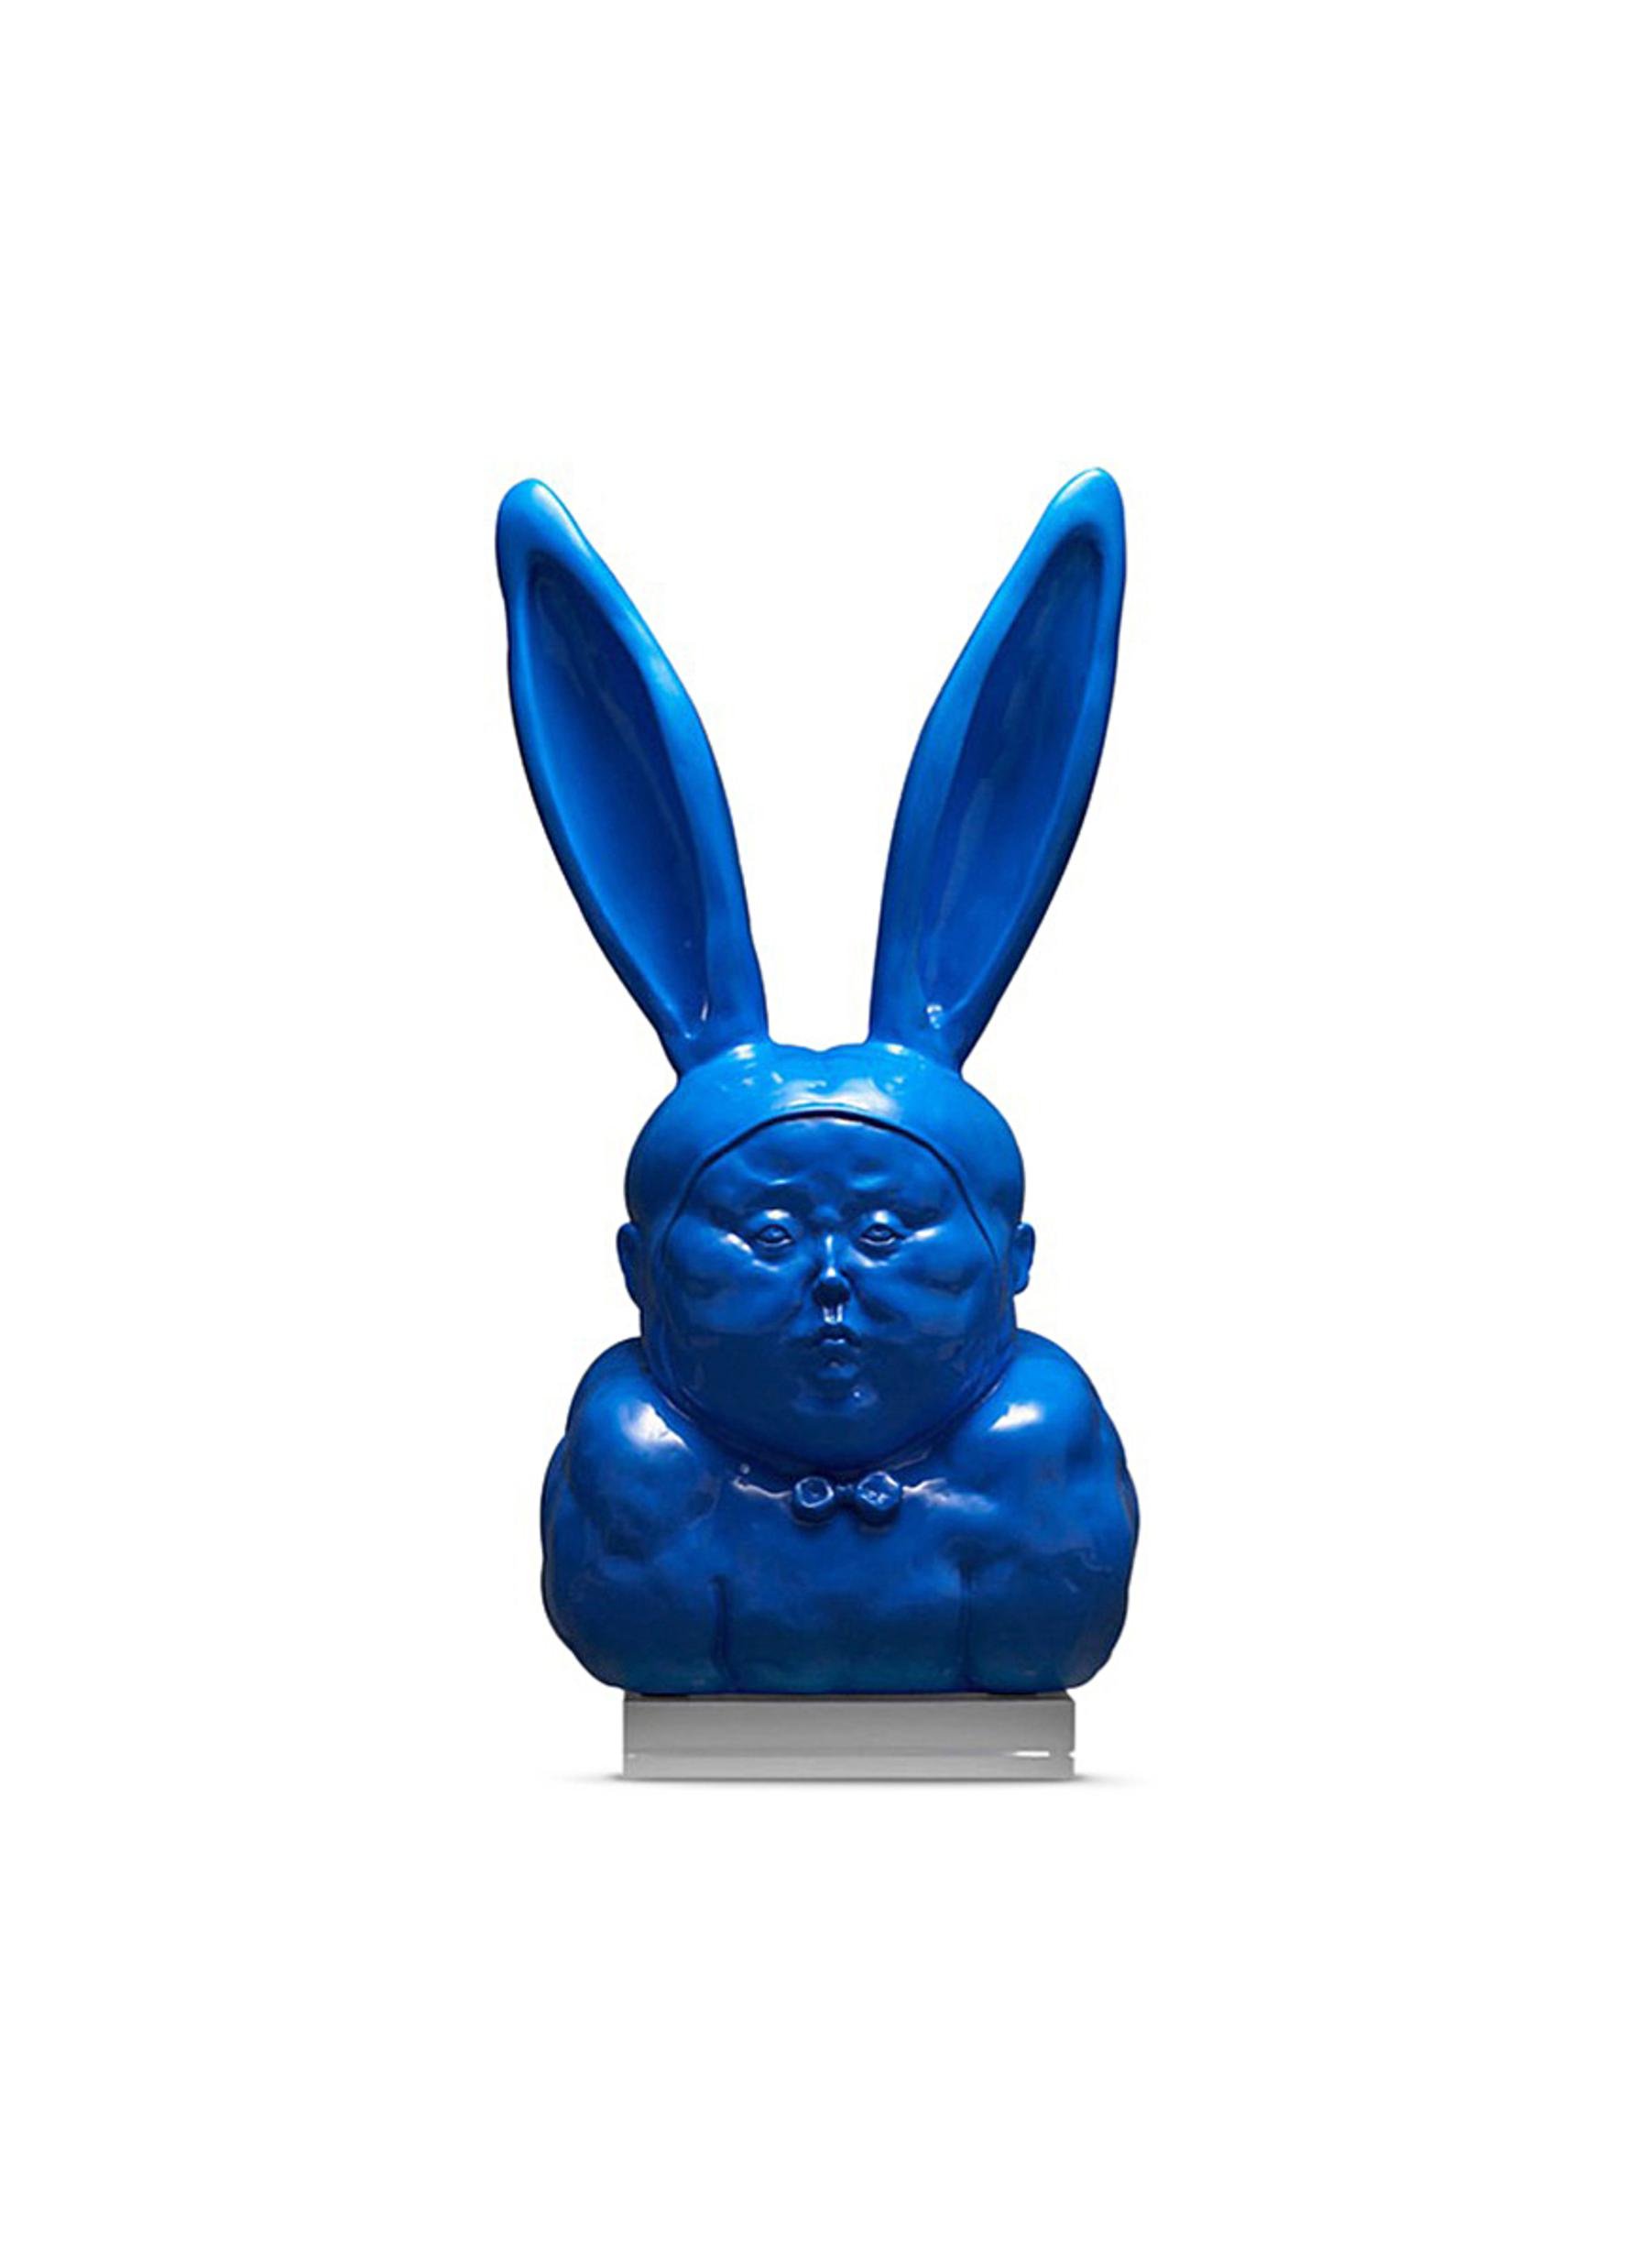 X+q The bunny guy i sculpture